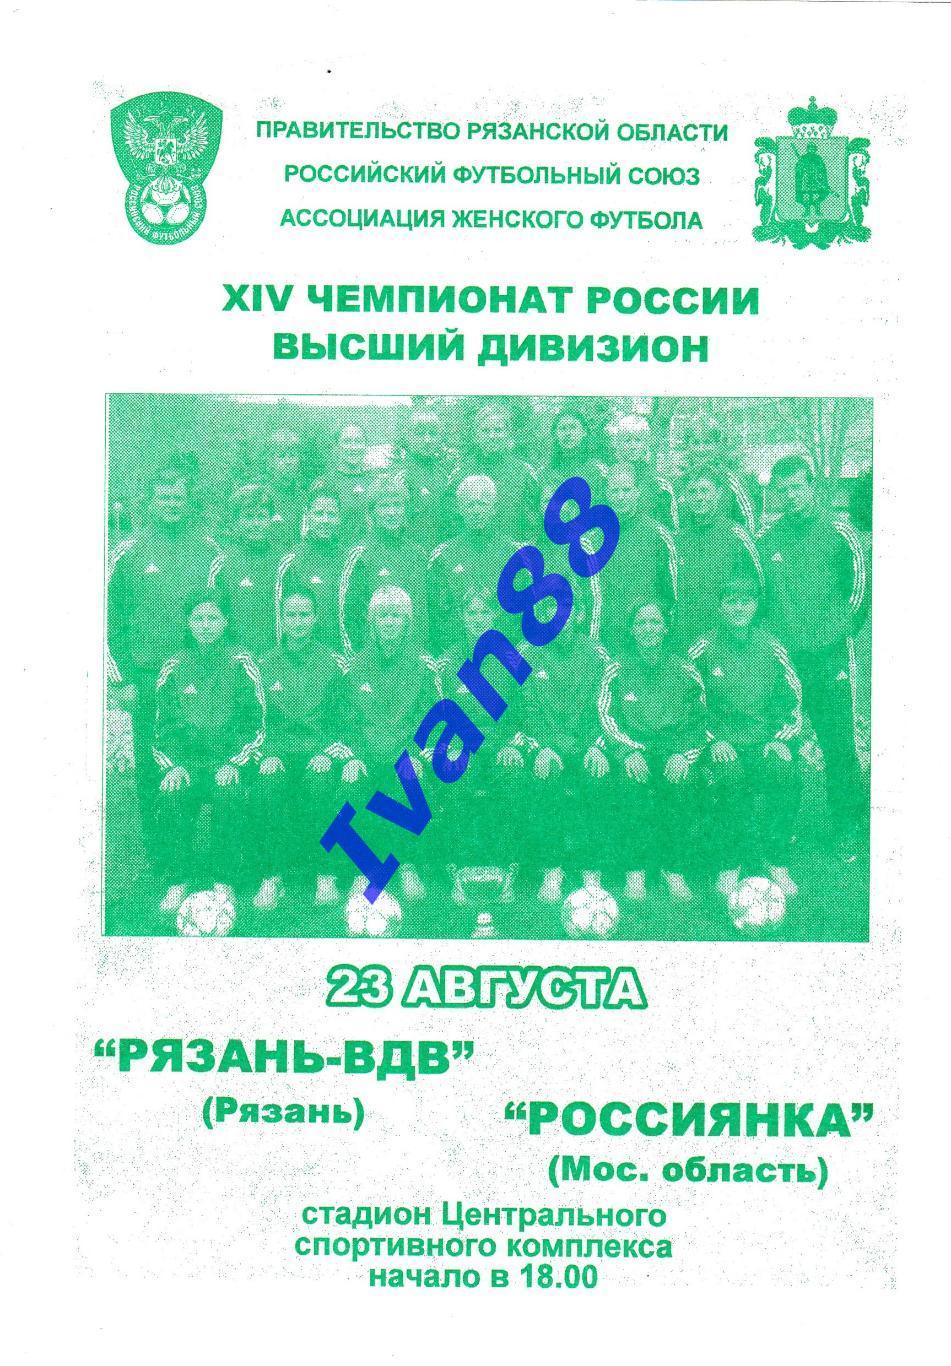 Рязань-ВДВ Рязань - Россиянка Московская область 2005